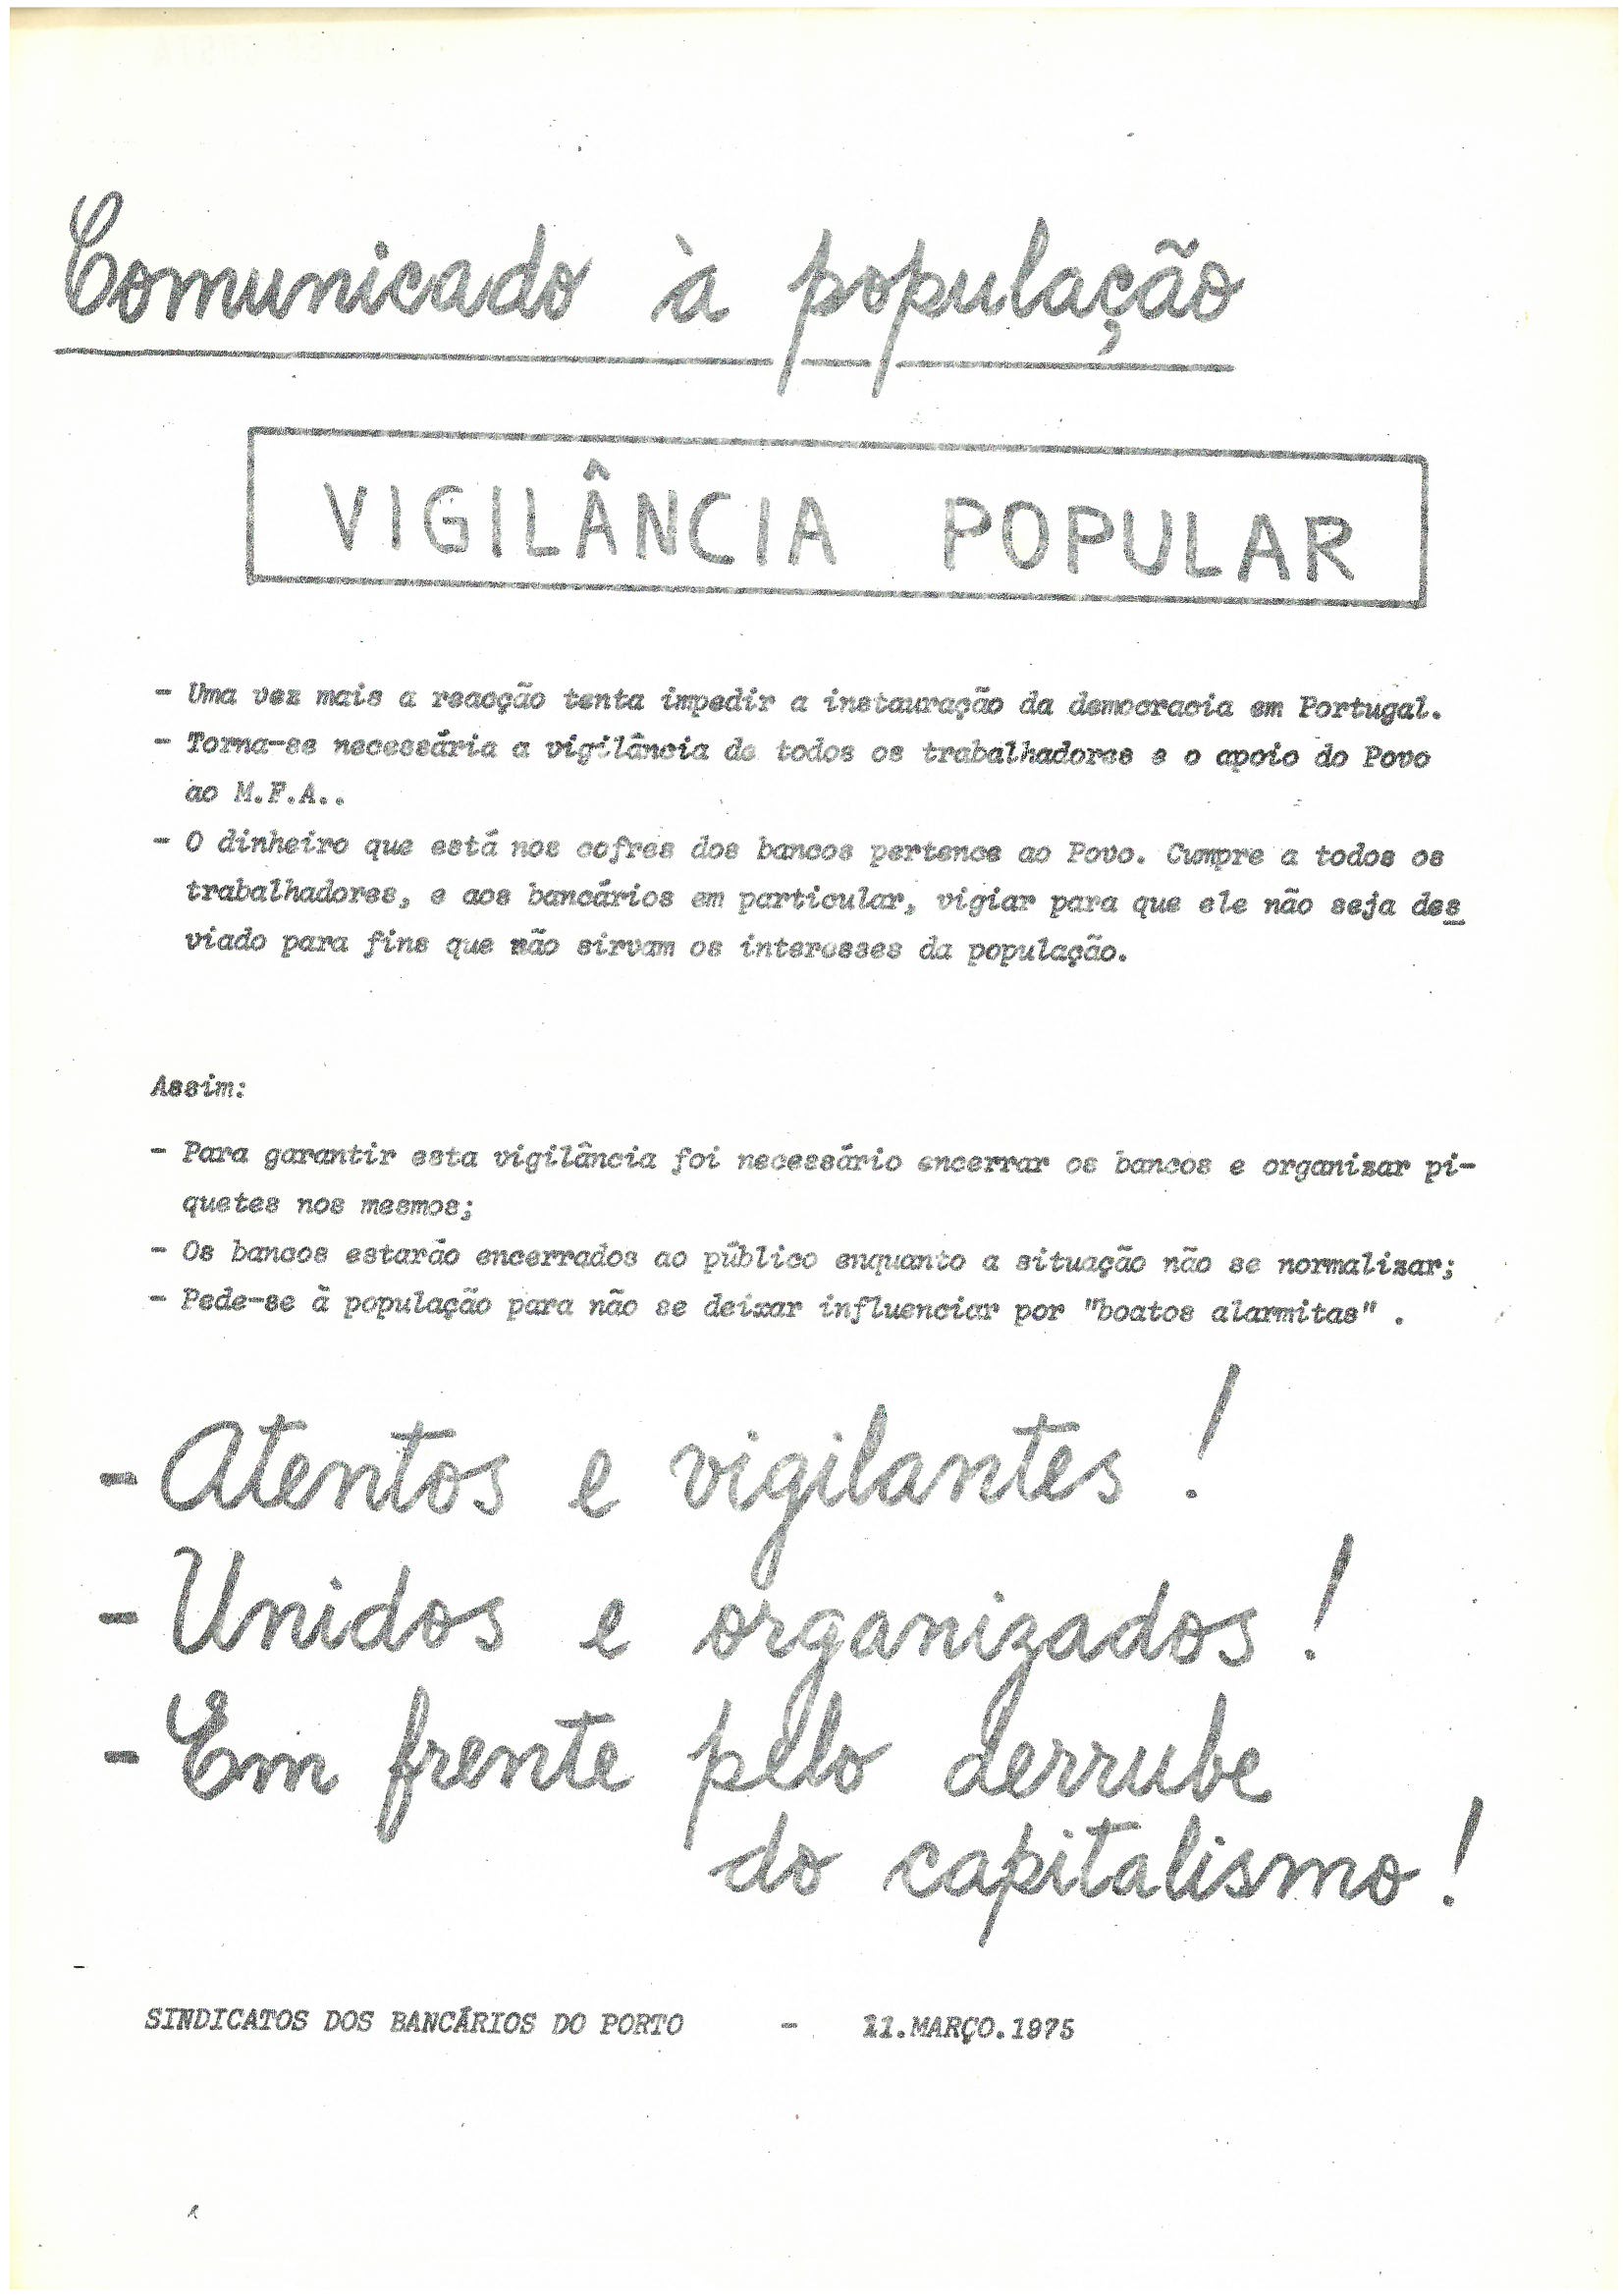 Sindicato dos Bancários do Porto, "Comunicado à população: Vigilância popular"